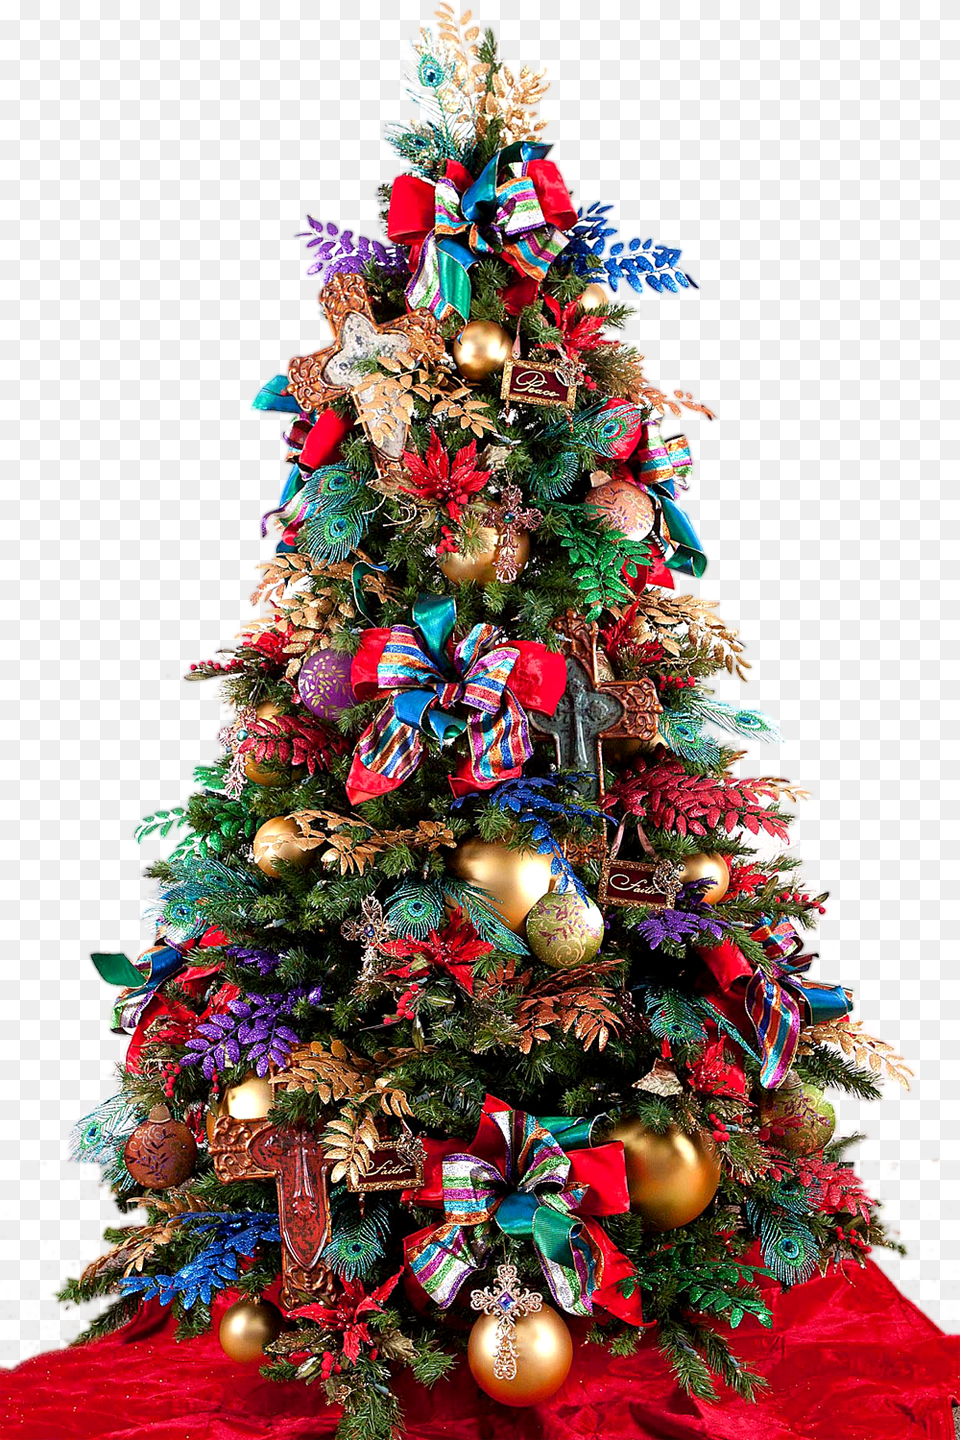 Christmas Tree Ribbon Design Iamge Christmas Tree Decorations For Boys, Christmas Decorations, Festival, Christmas Tree, Plant Png